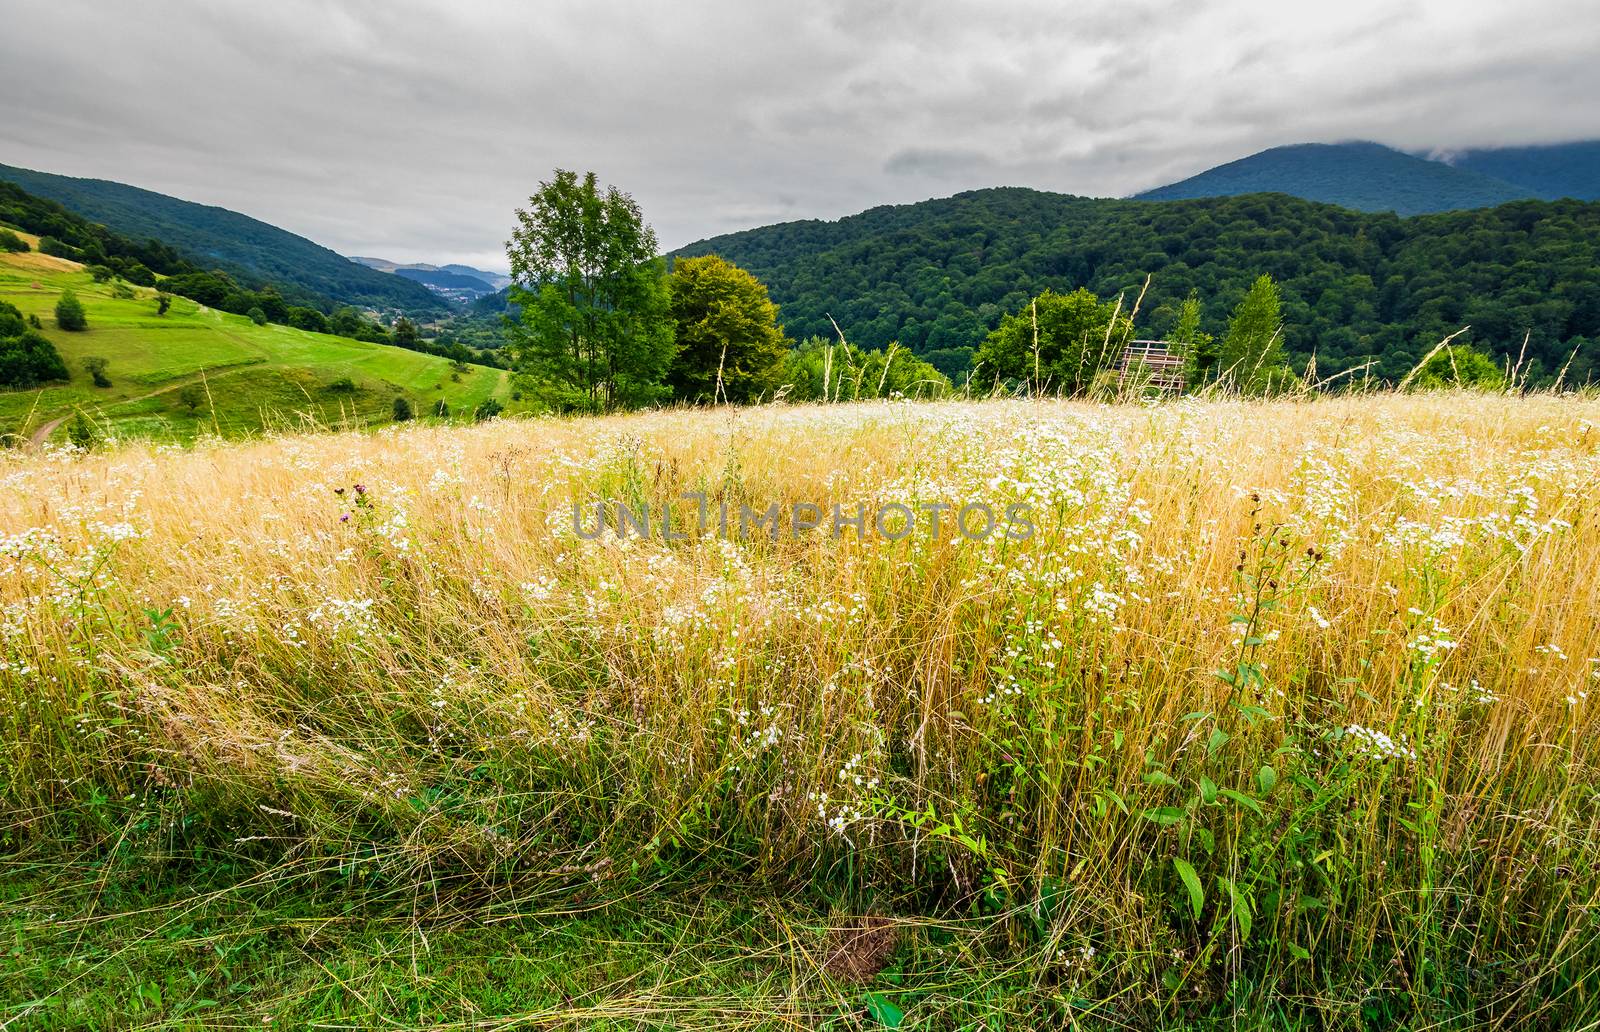 rural field on hillside in mountains by Pellinni